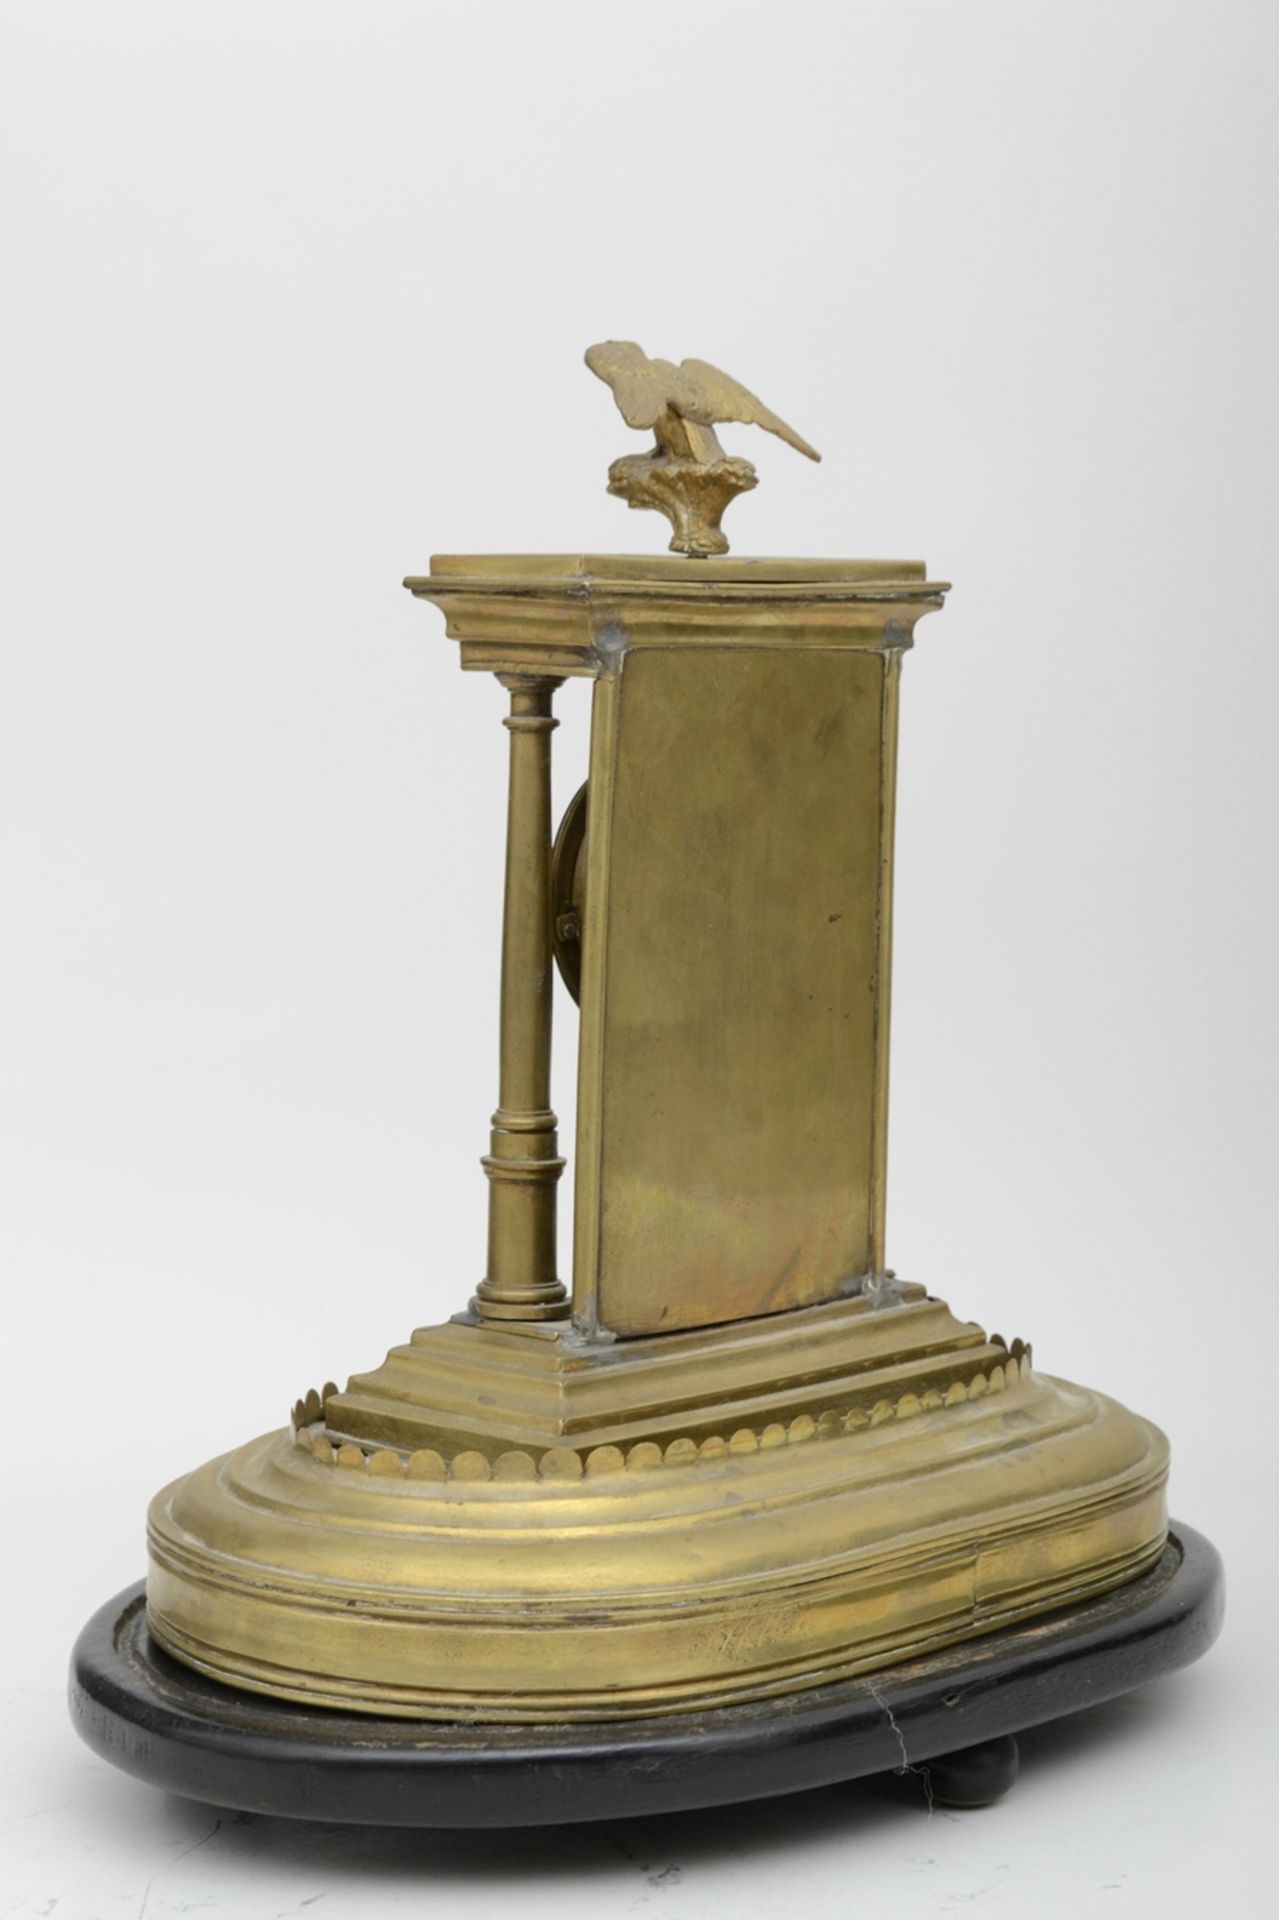 Dekorative Tischuhr in Portalform, von Adler gekrönt; ungeprüftes, mechanisches Uhrwerk, unterhalb - Image 6 of 7